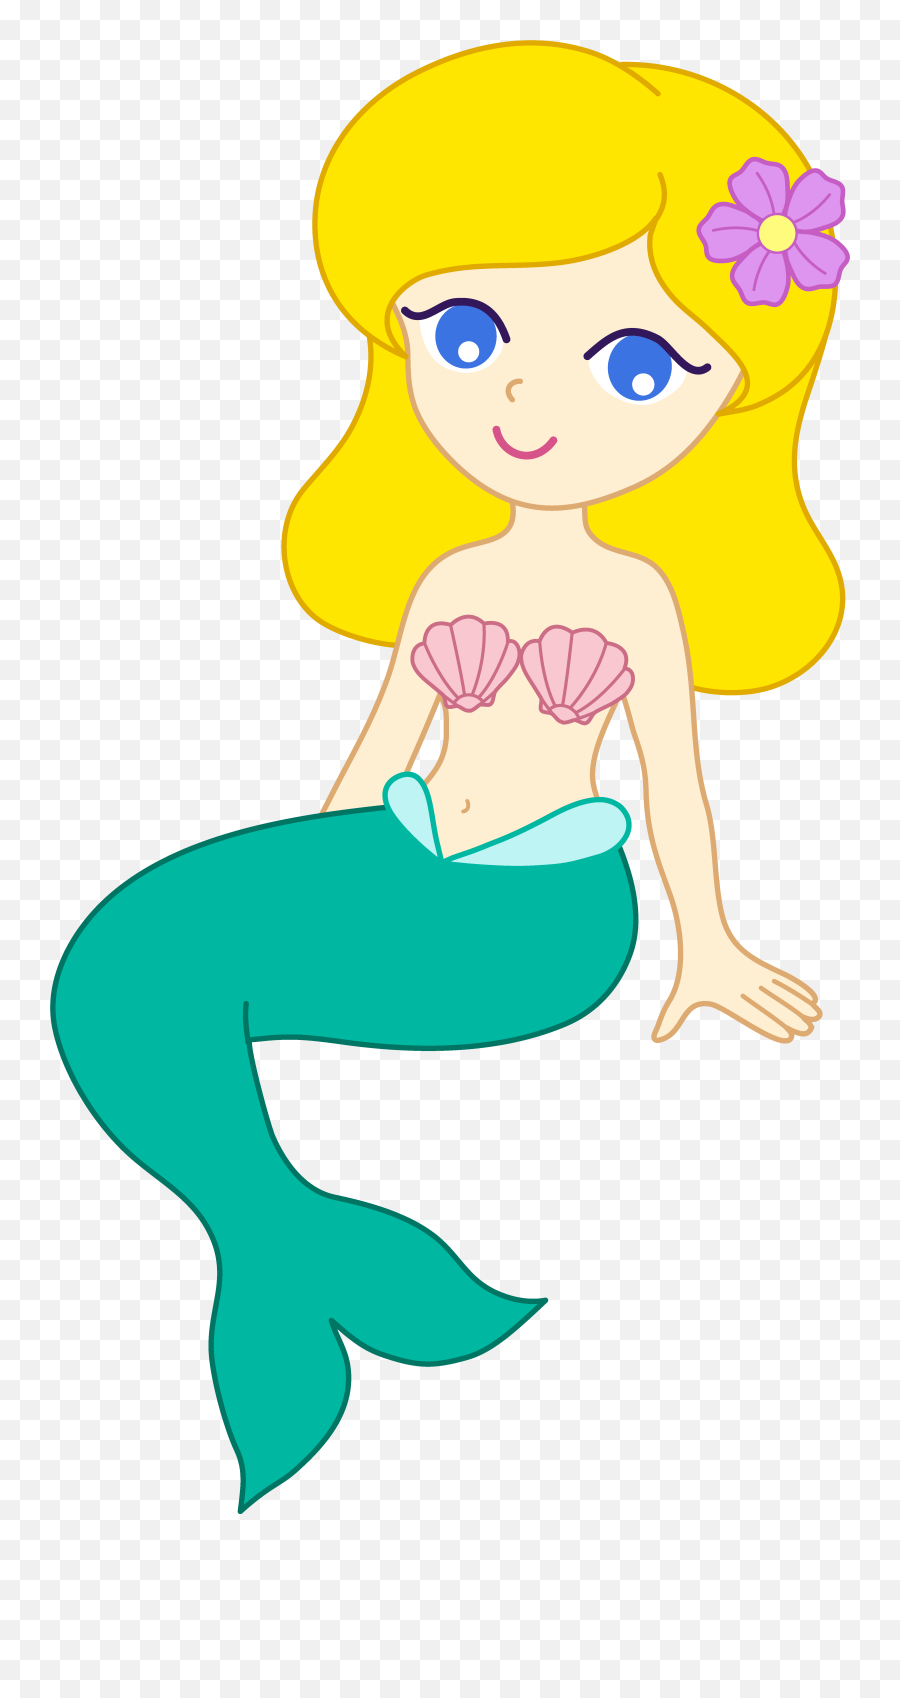 Cute Mermaid Drawing Free Image Download - Mermaid Clipart Emoji,Little Mermaid Sketches Ariel Emotions